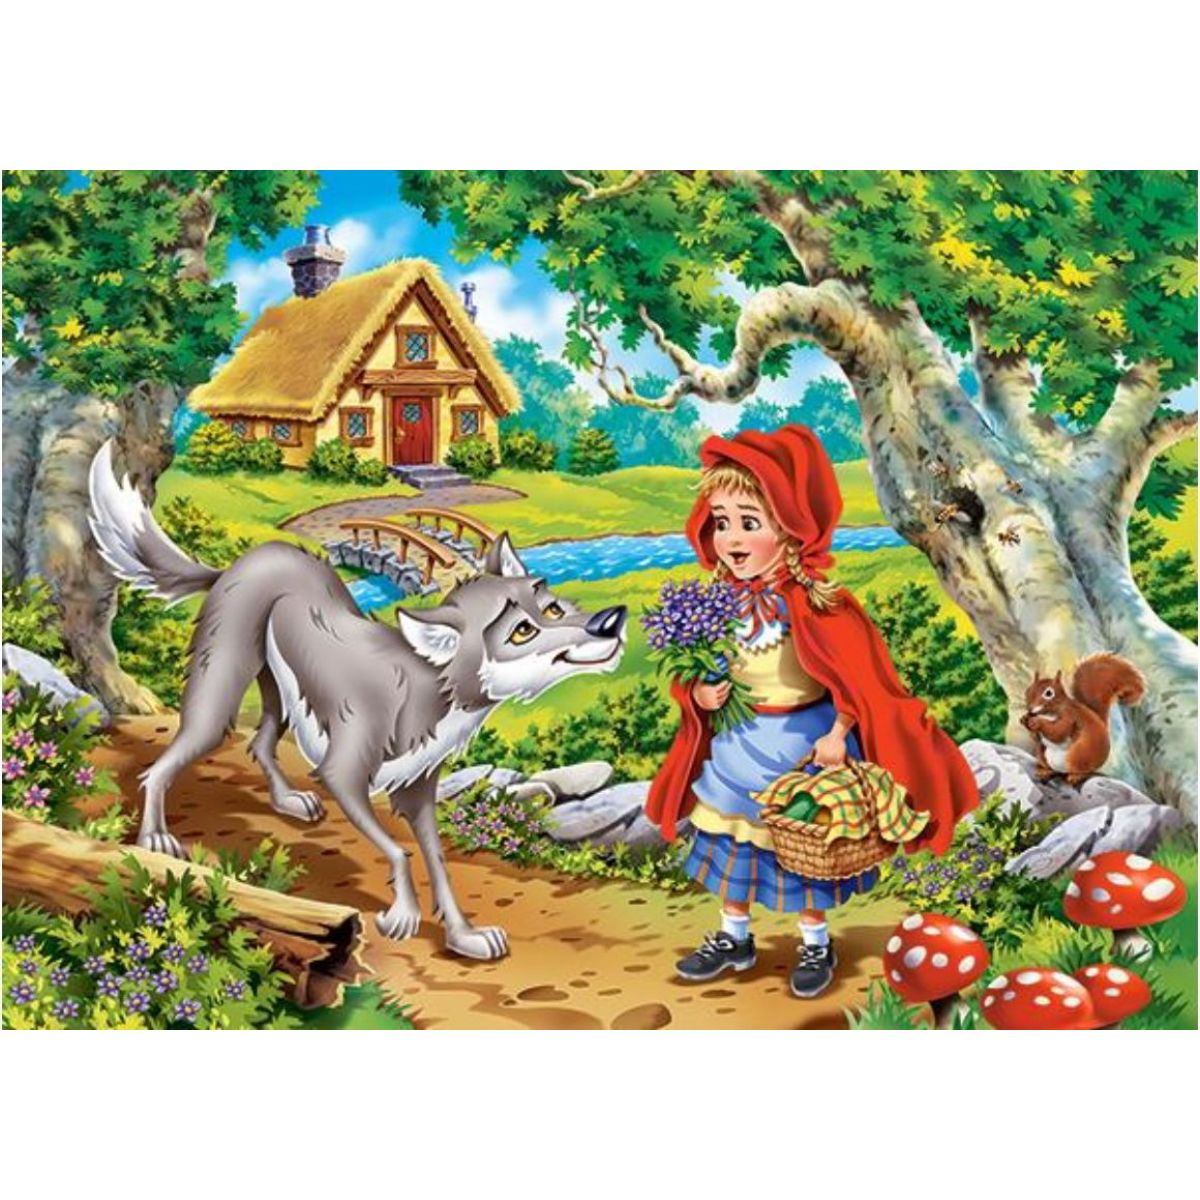 Castorland Puzzle Červená karkulka s vlkem 60 dílků